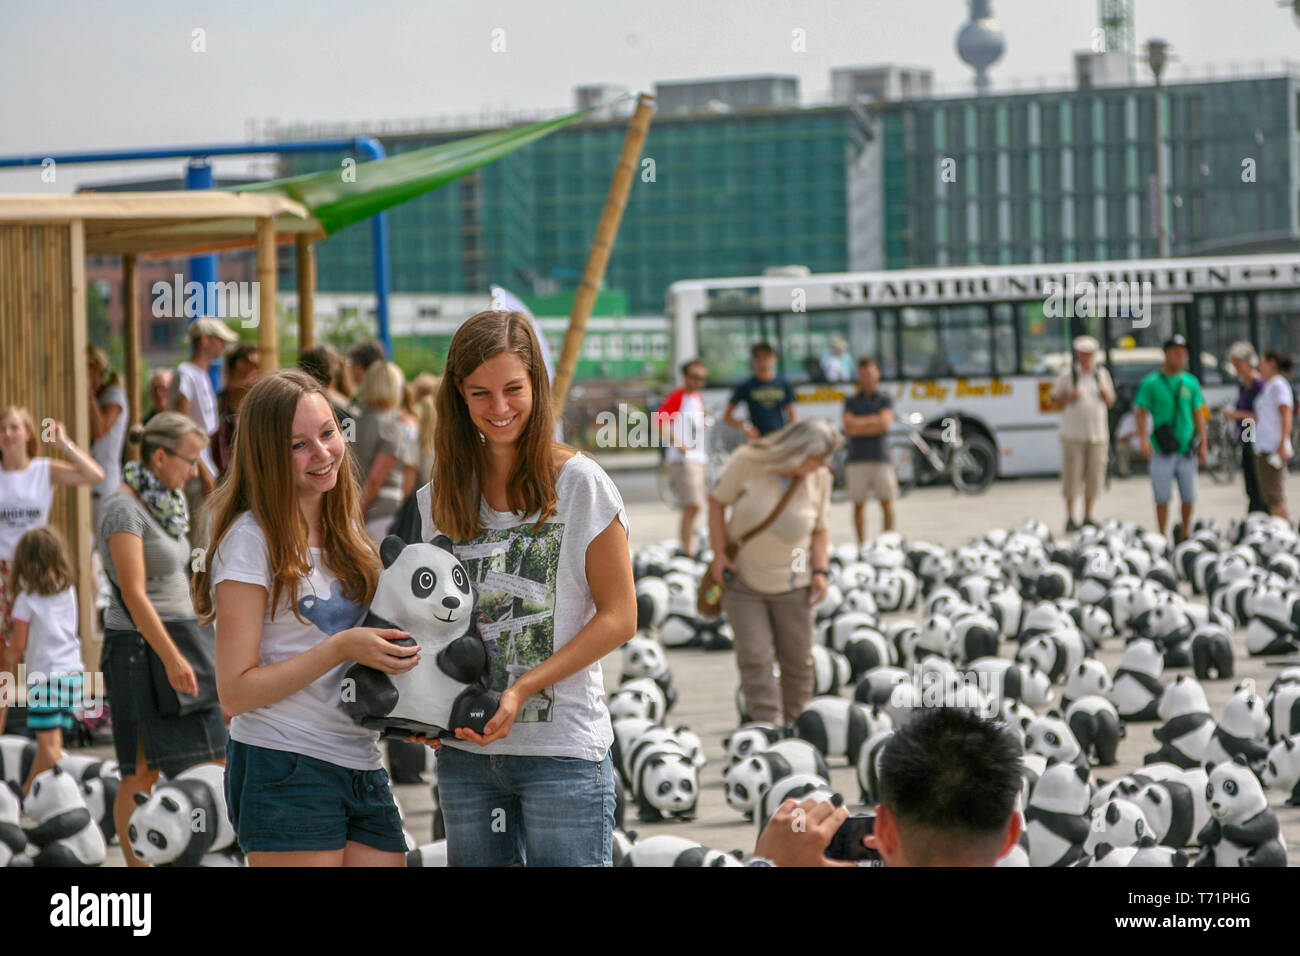 Berlino, Germania, 6 Agosto 2013 - Il WWF festeggia il suo cinquantesimo anniversario con un panda tour. 1600 sculture di Pandabaeren sono state impostate nella parte anteriore di Berlino Stazione Centrale. Queste corrispondono alle effettivamente ancora viventi numero di Pandabaeren in libertà. Foto Stock